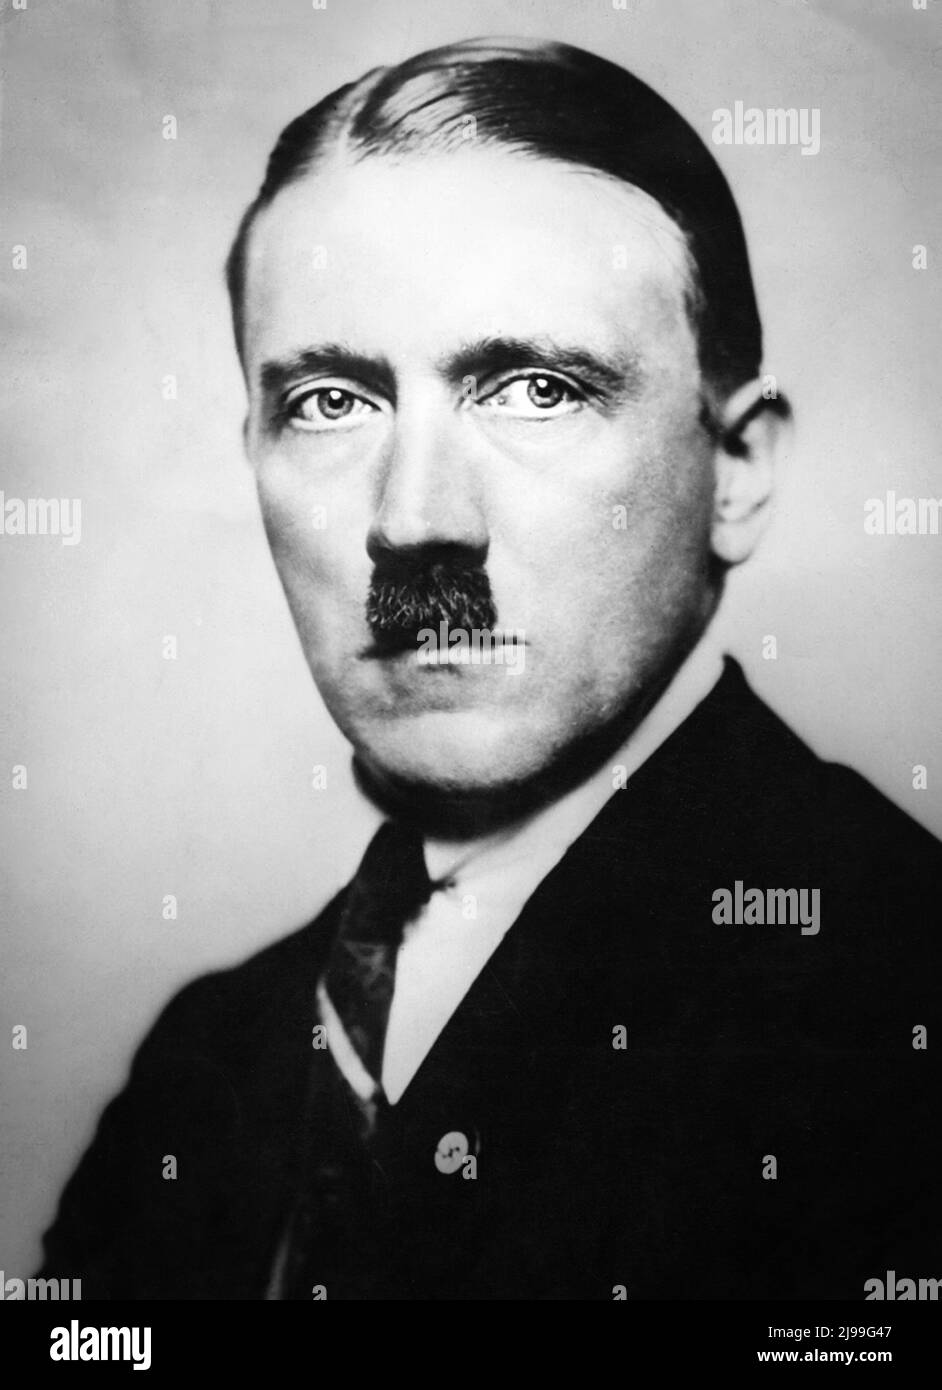 Adolf Hitler - Diktator von Nazi-Deutschland 1933-1945 Stockfoto